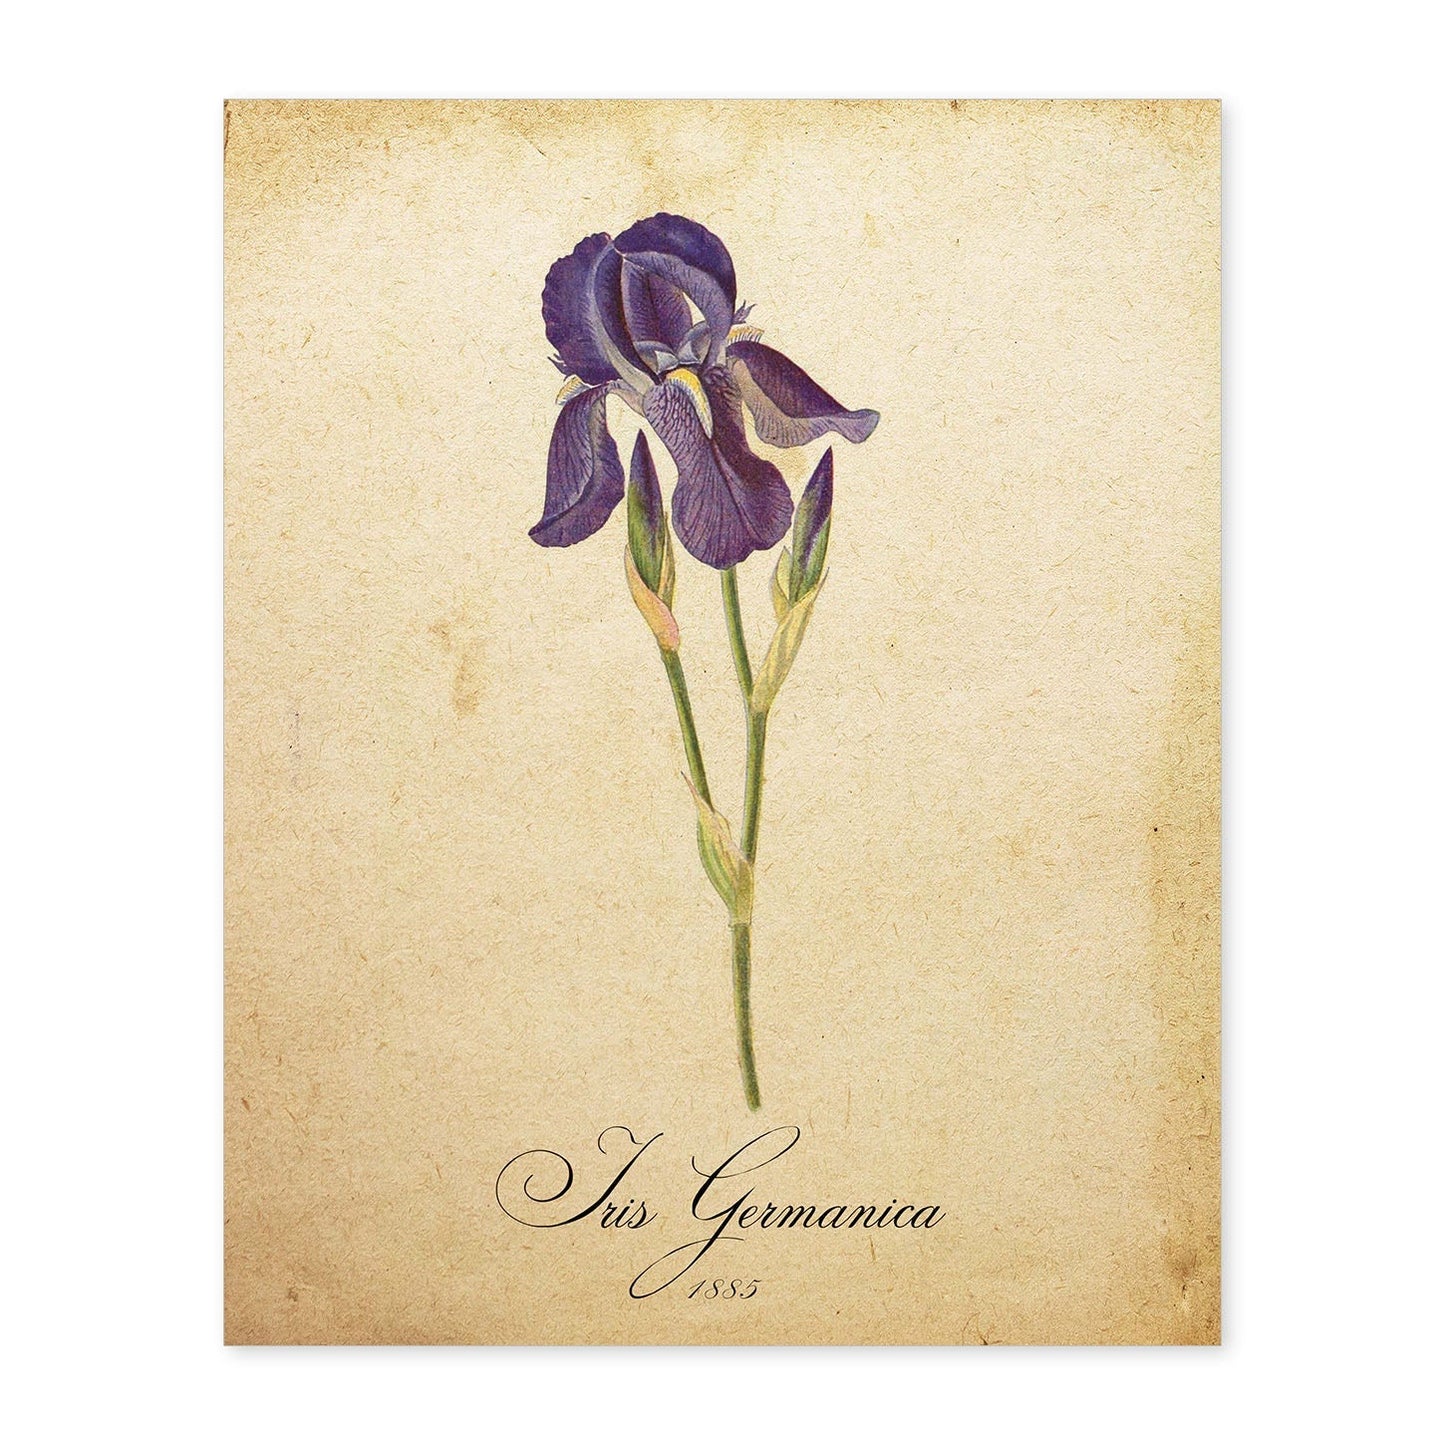 Poster de flores vintage. Lámina Iris germanica con diseño vintage.-Artwork-Nacnic-A4-Sin marco-Nacnic Estudio SL